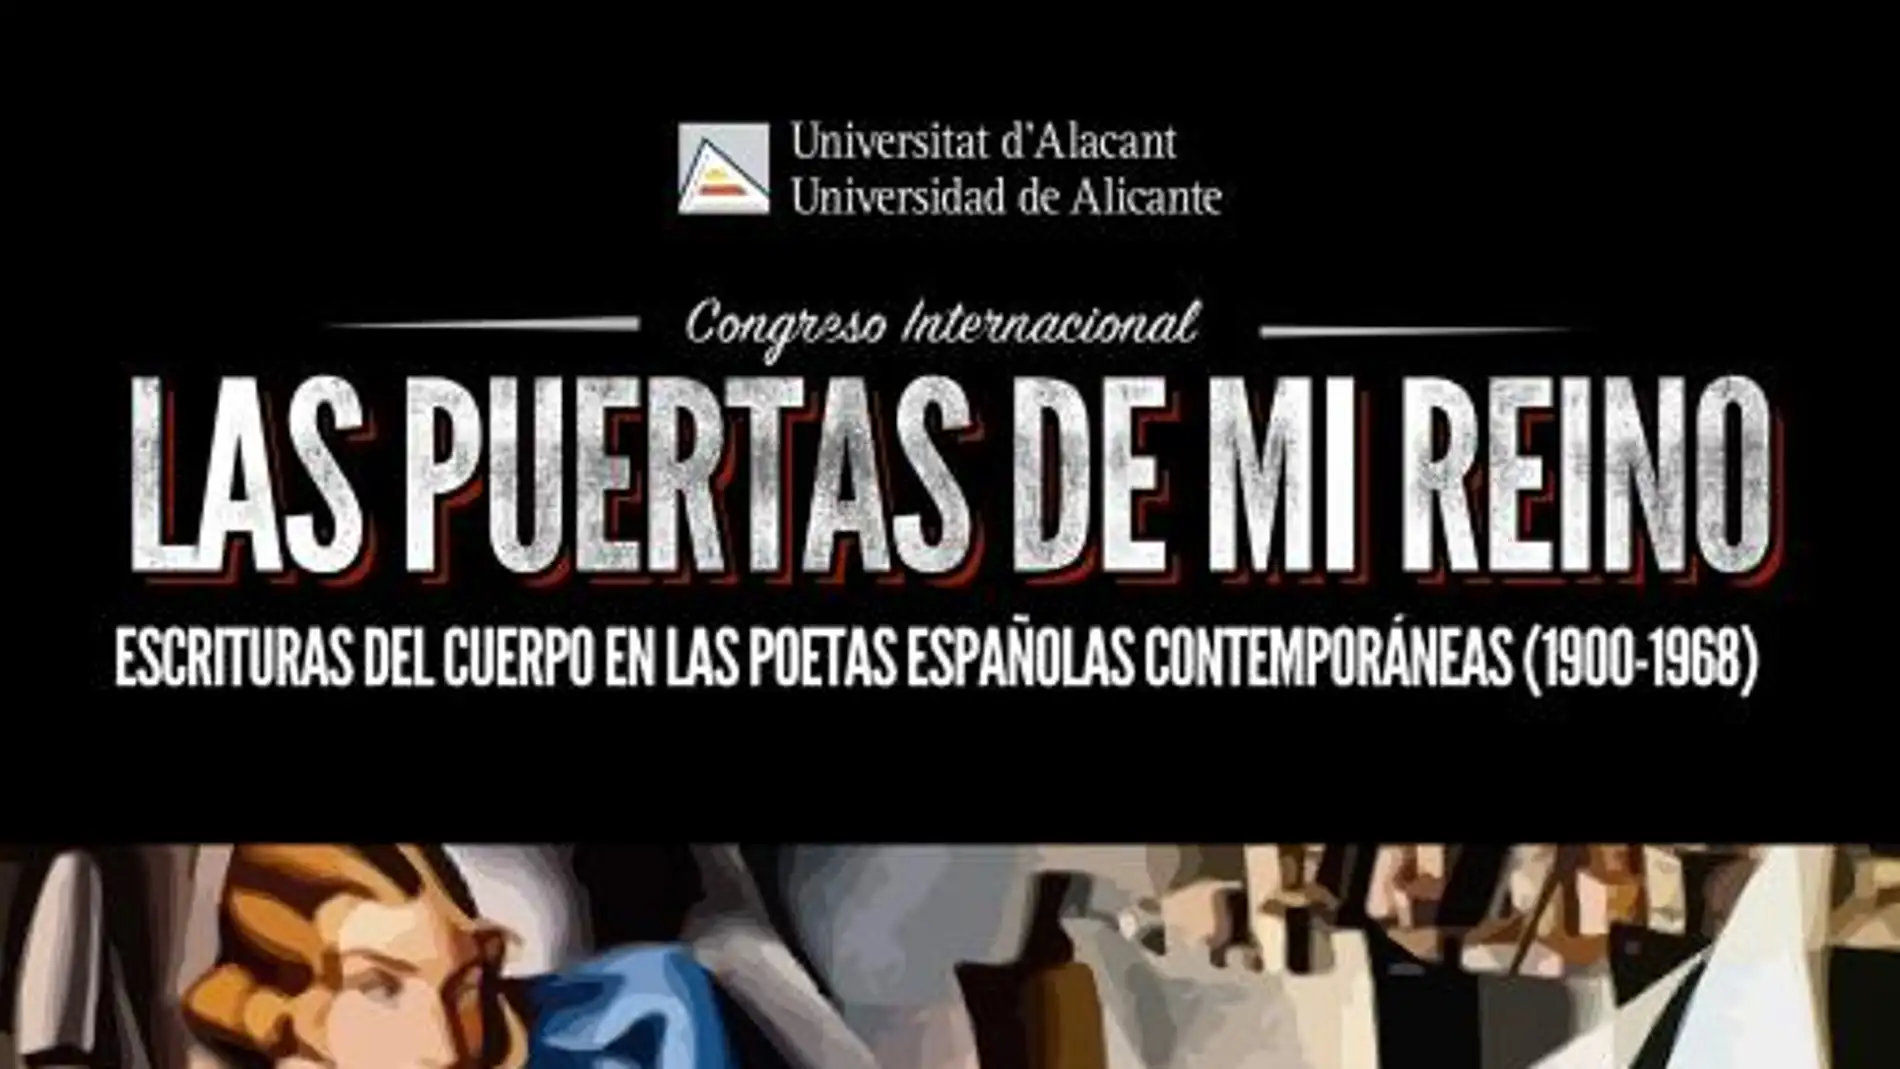 Cartel anunciador del Congreso en la Universidad de Alicante 